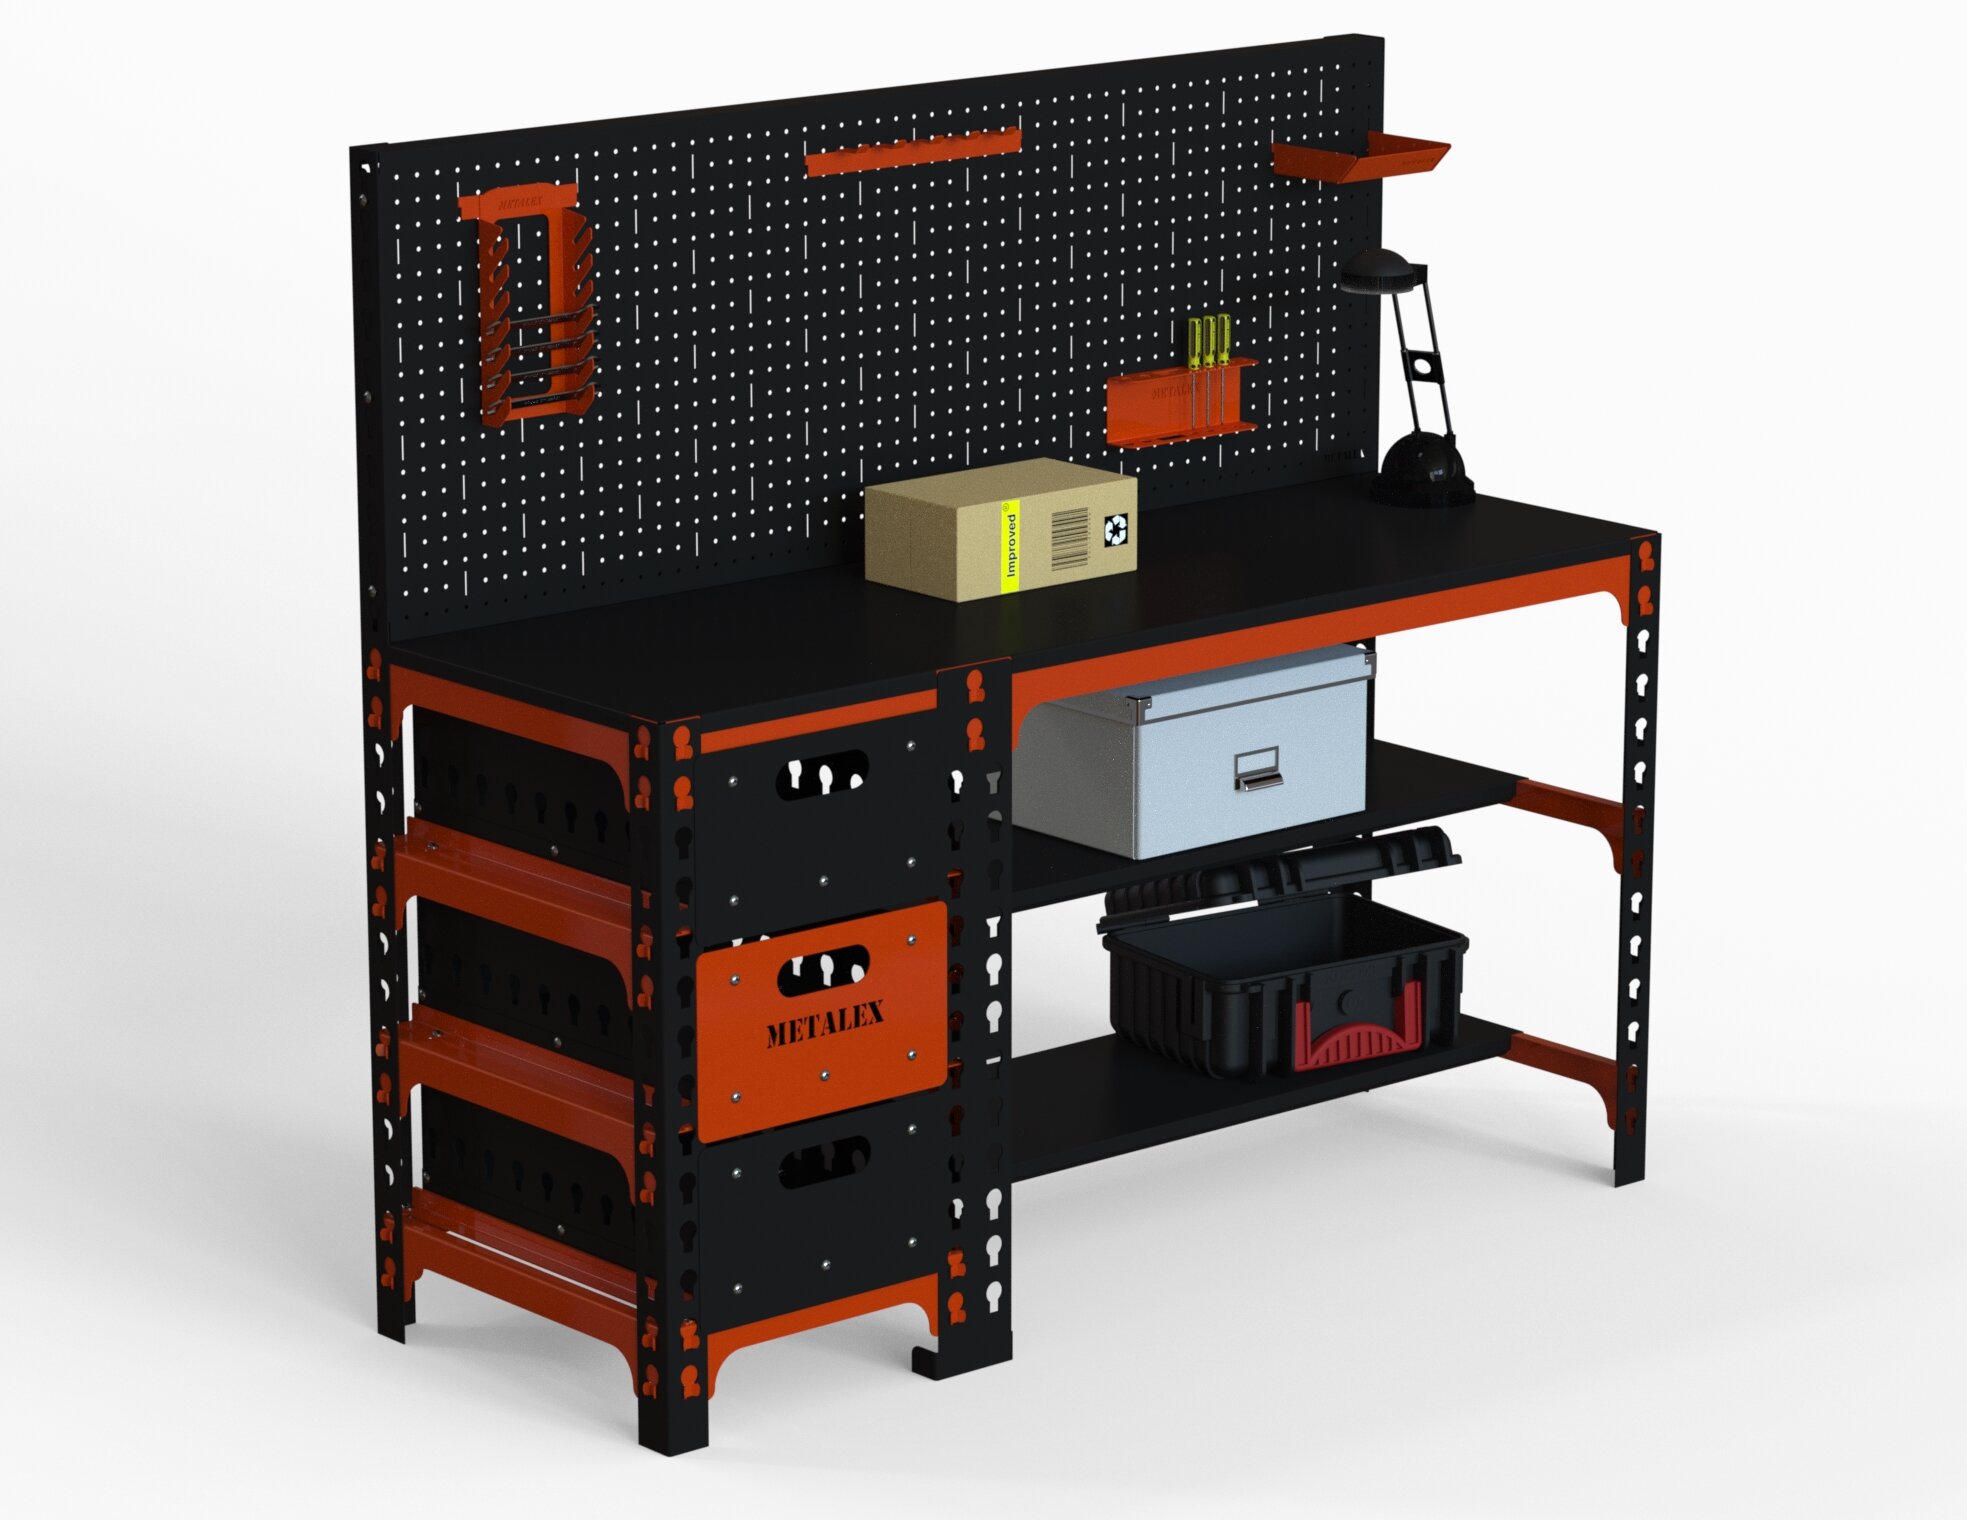 Стол металлический Metalex 750х1200х600 с выдвижными ящиками и перфопанелью (оранжево-чёрный)